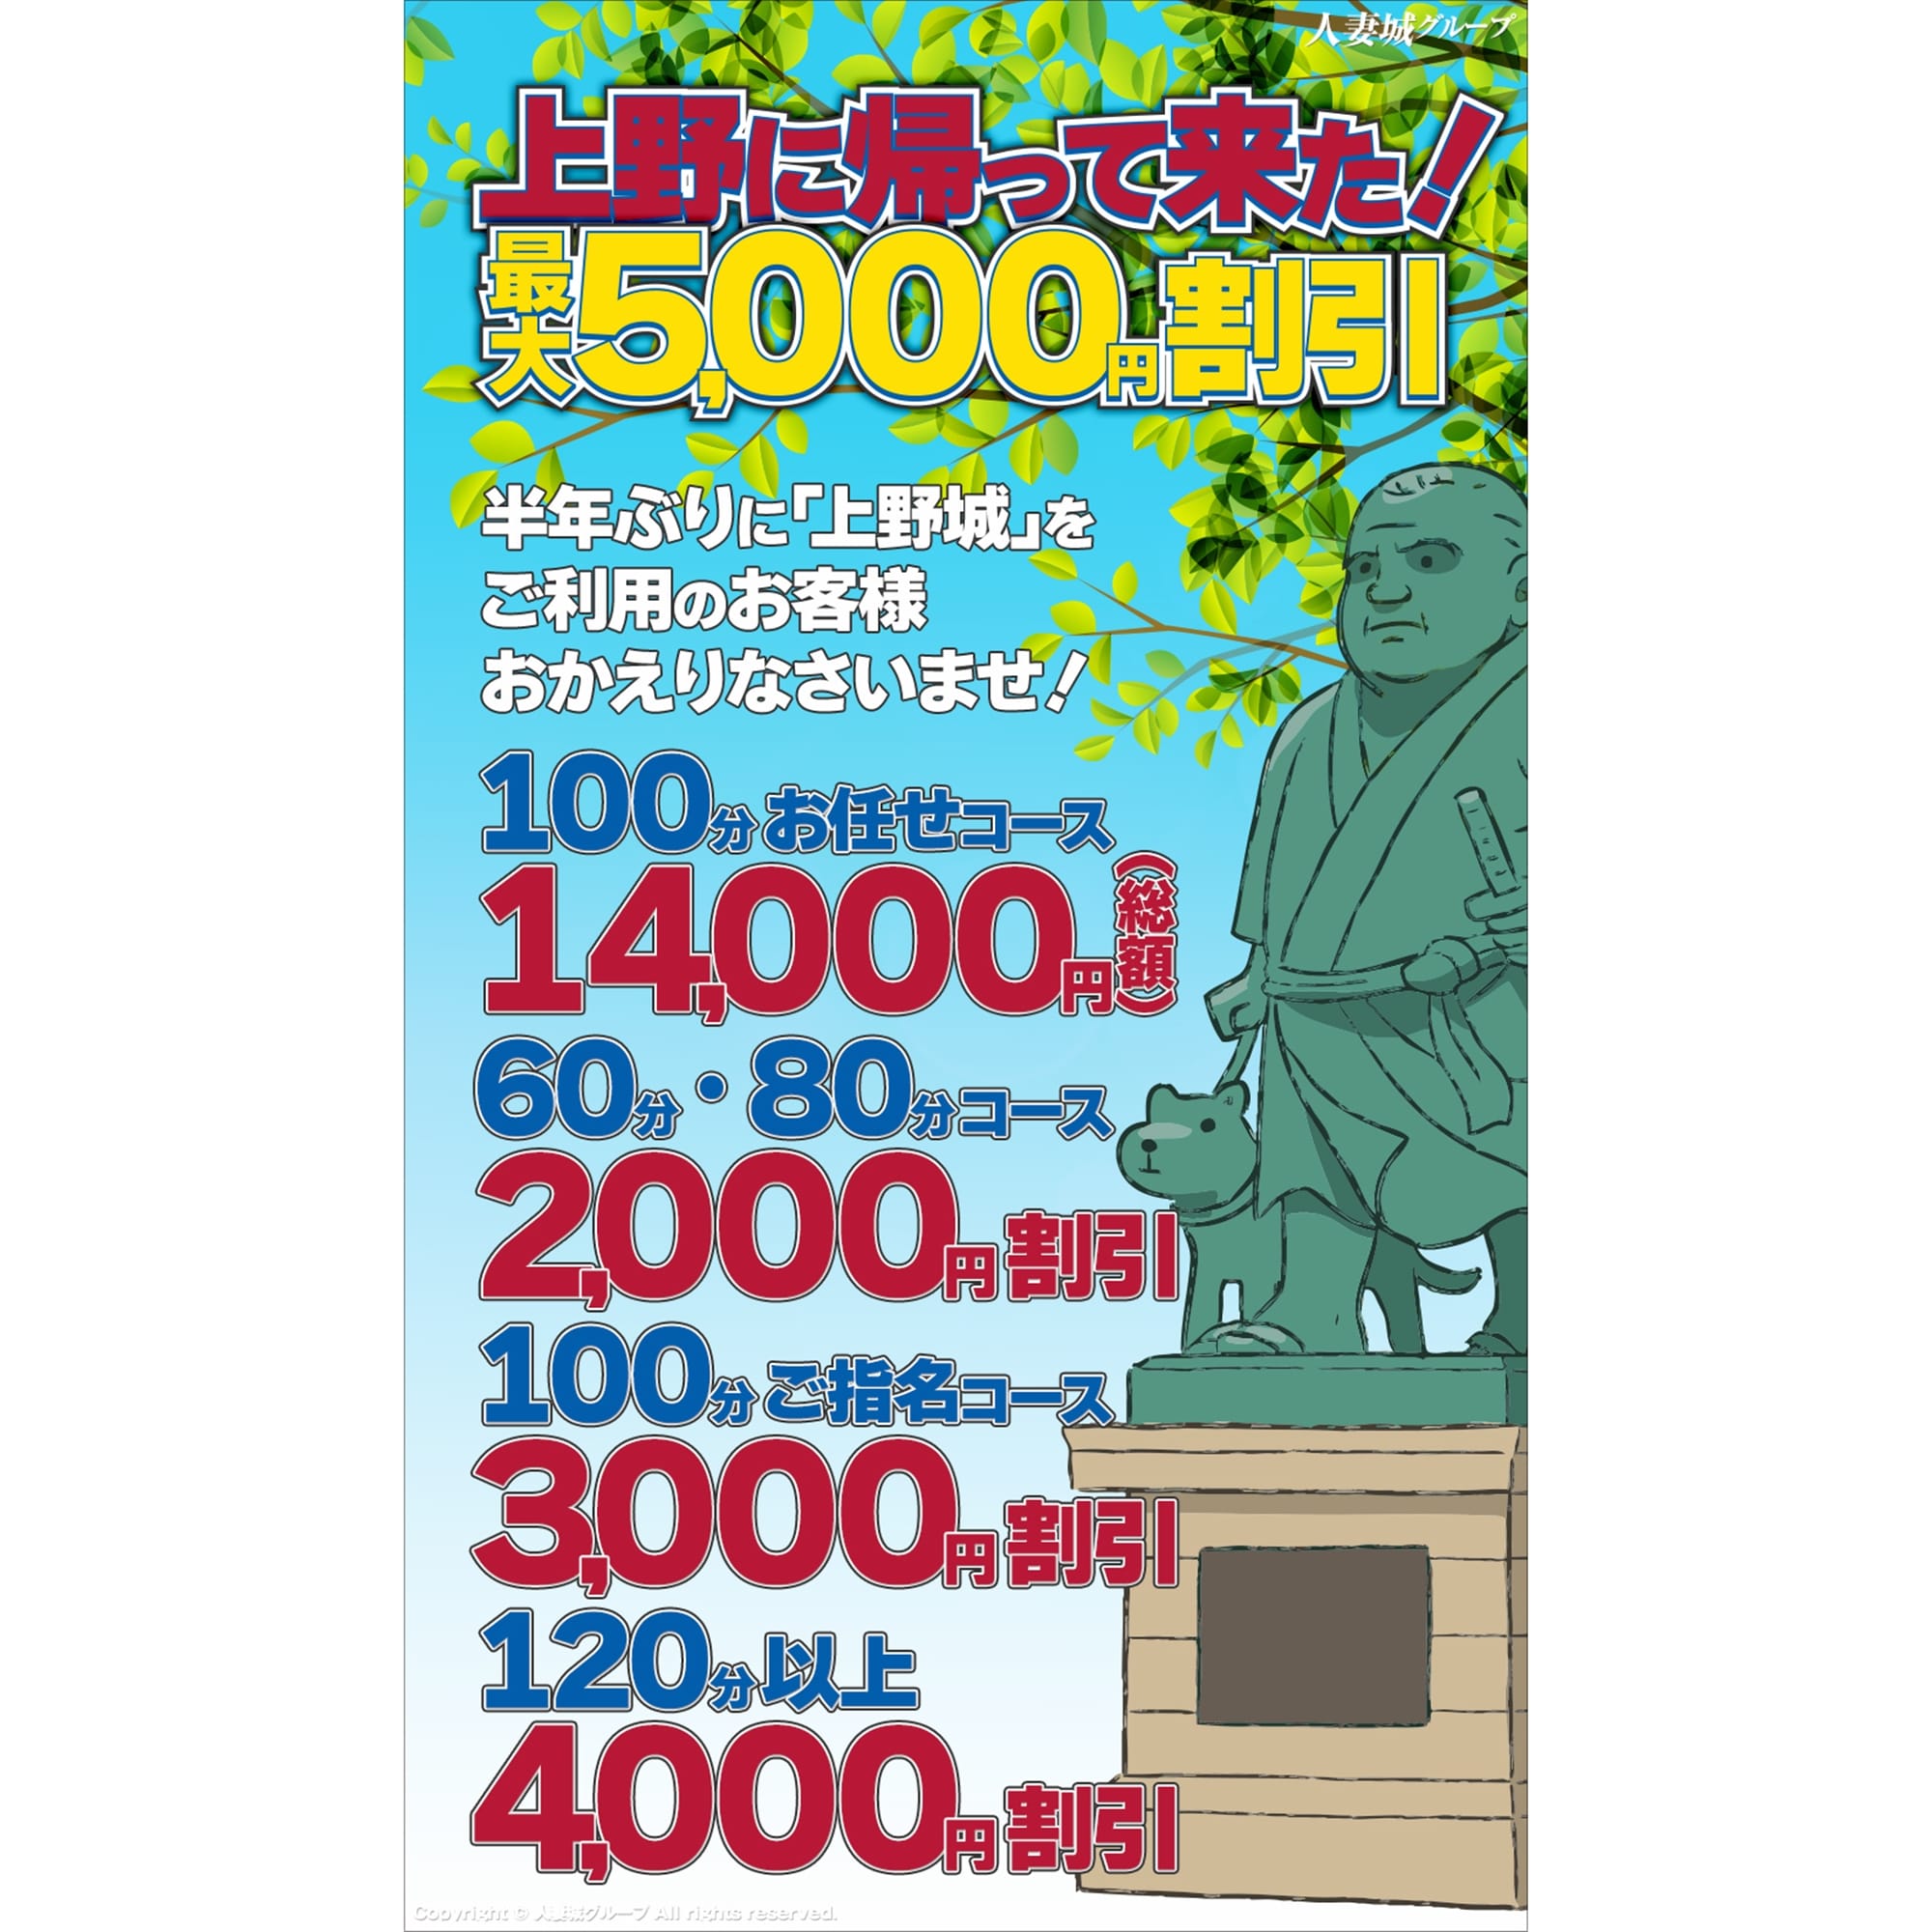 「上野に帰って来た!」04/19(金) 10:00 | 上野人妻城のお得なニュース